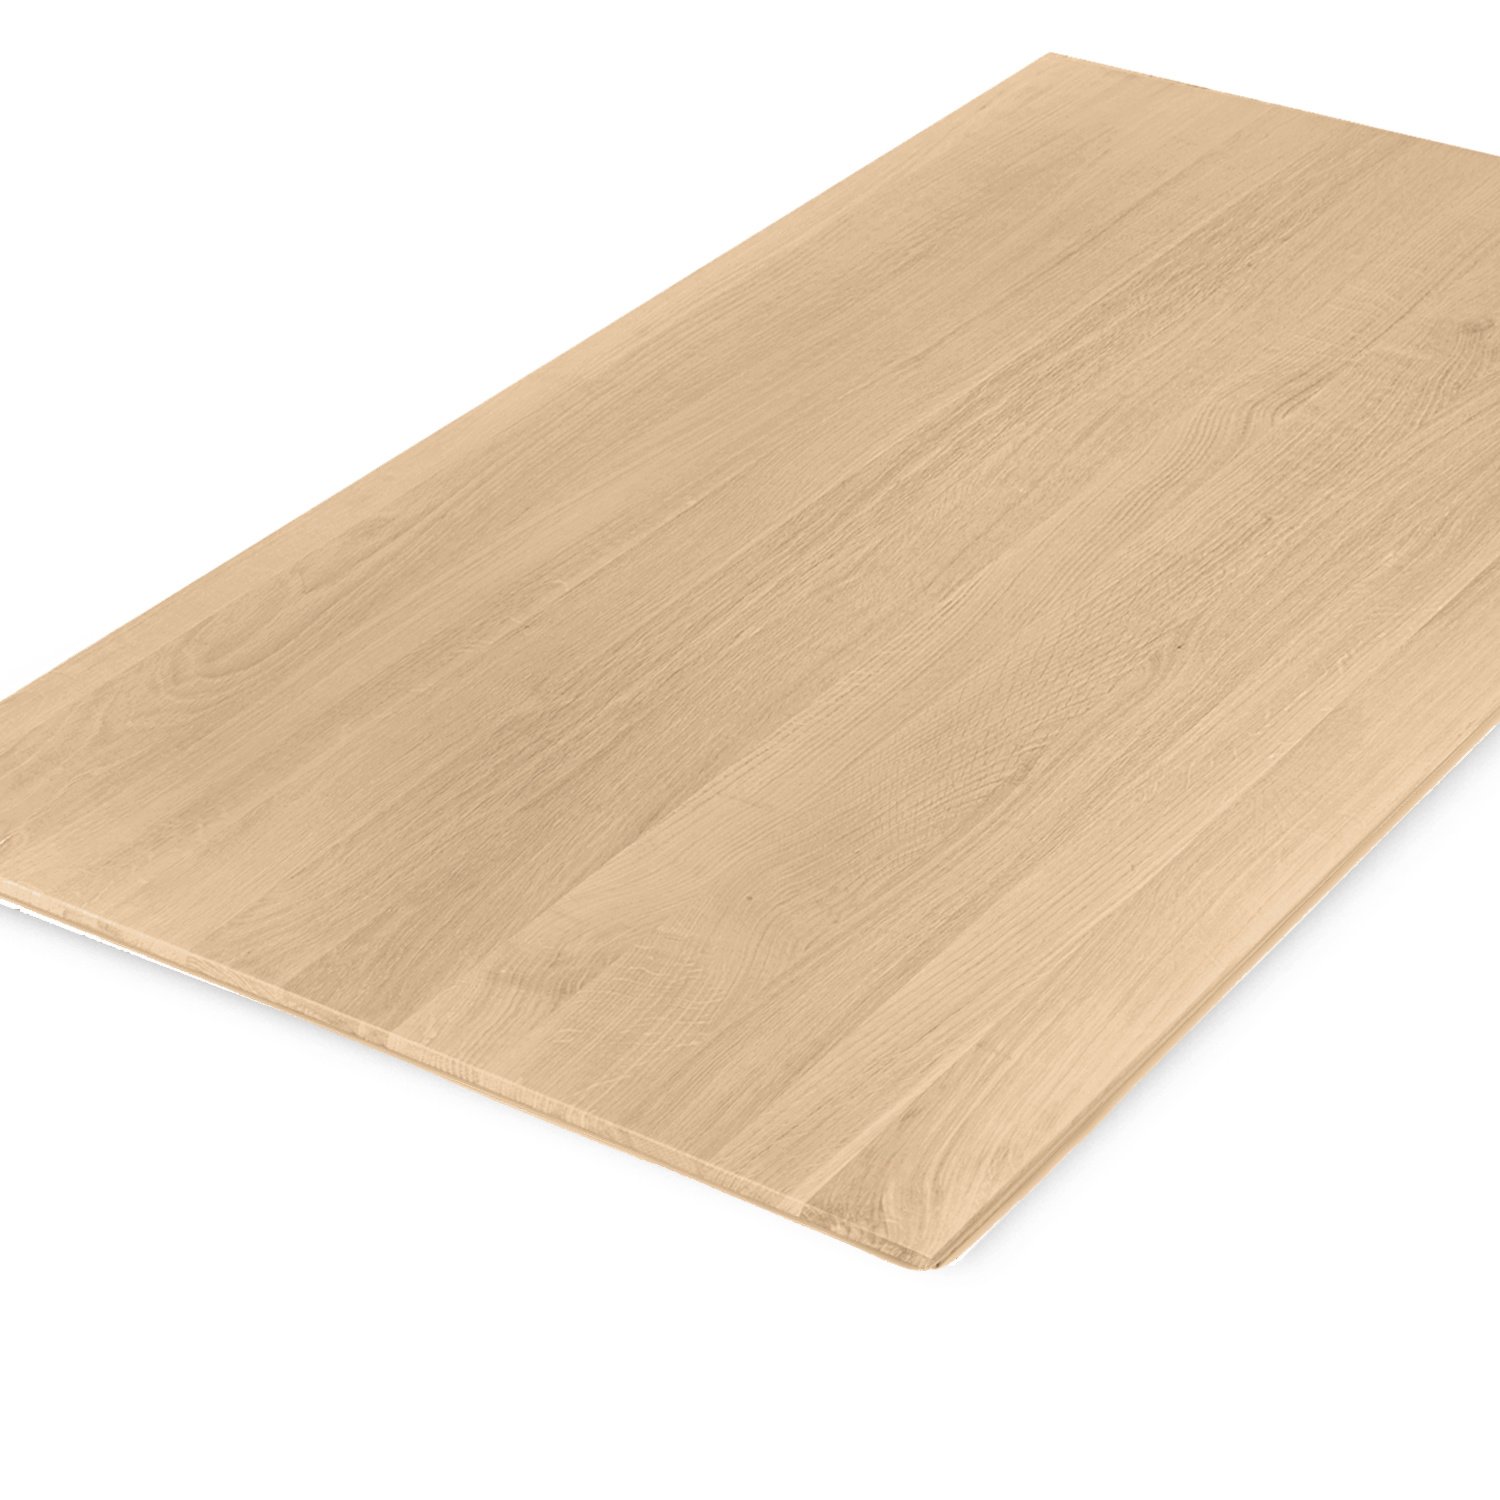  Eiken tafelblad foutvrij verjongd - op maat - 3 cm dik (1-laag) - met verjongde rand - foutvrij Europees eikenhout - verlijmd kd 8-12% - 50-120x50-350 cm